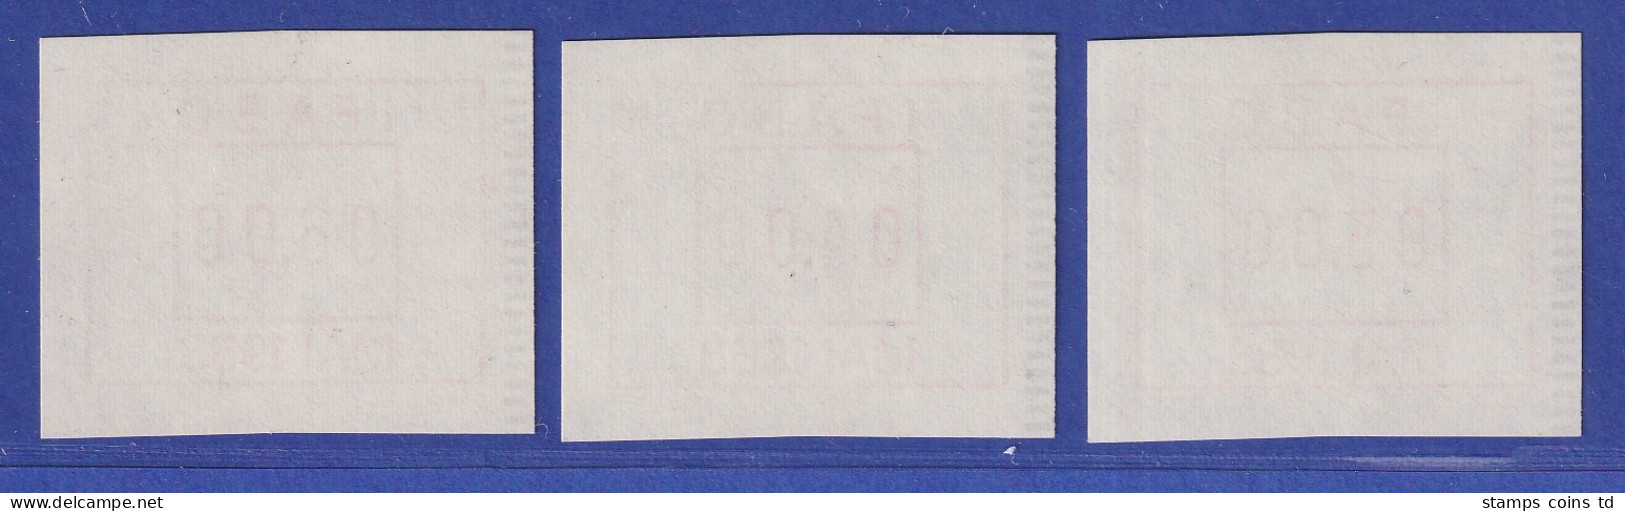 Österreich FRAMA-ATM Vorführdruck IFABO MAI 1983 Als Satz !!! 3.00-4.00-6.00 **  - Automatenmarken [ATM]